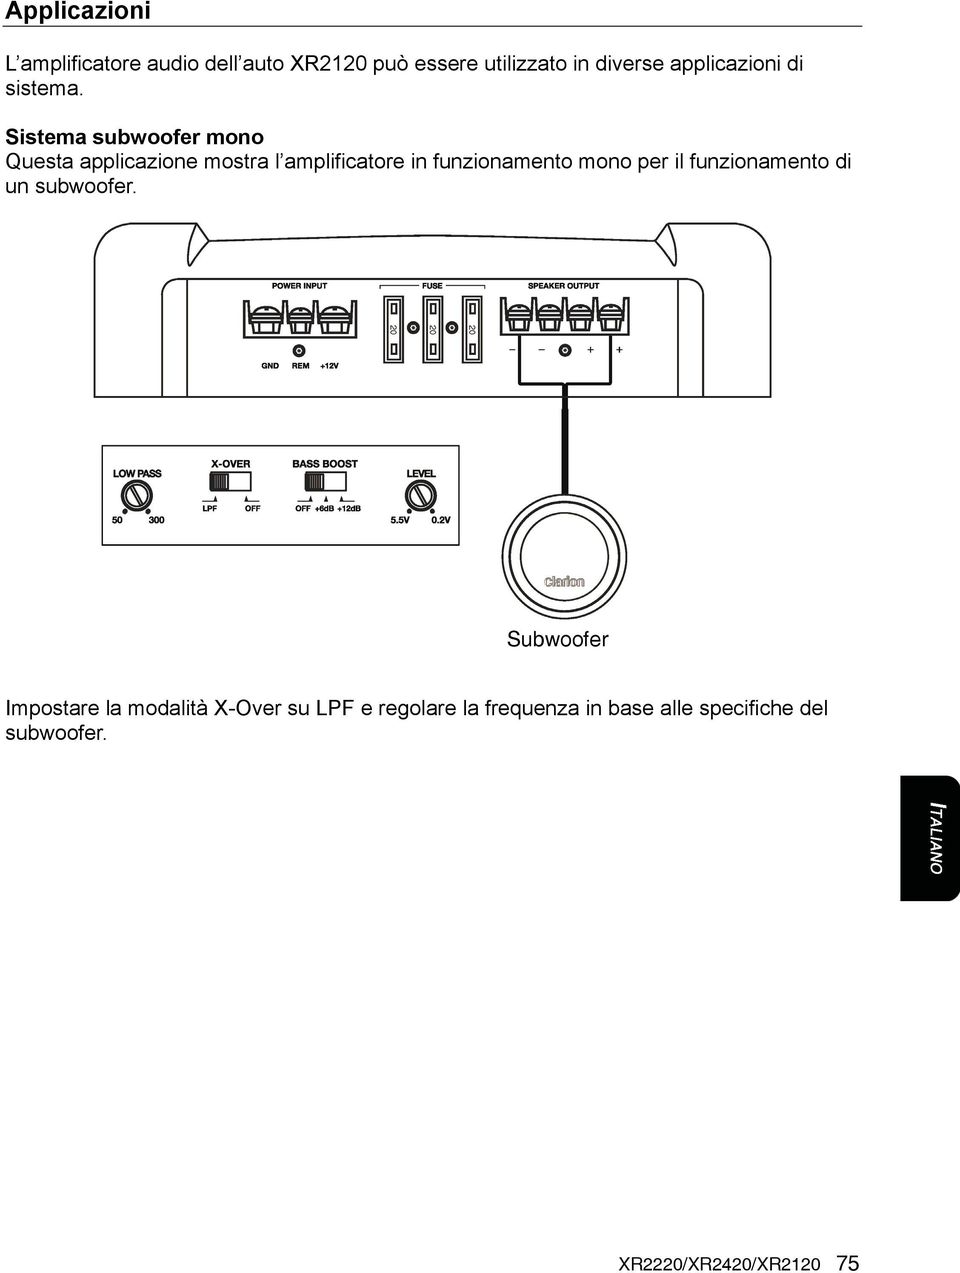 Sistema subwoofer mono Questa applicazione mostra l amplificatore in funzionamento mono per